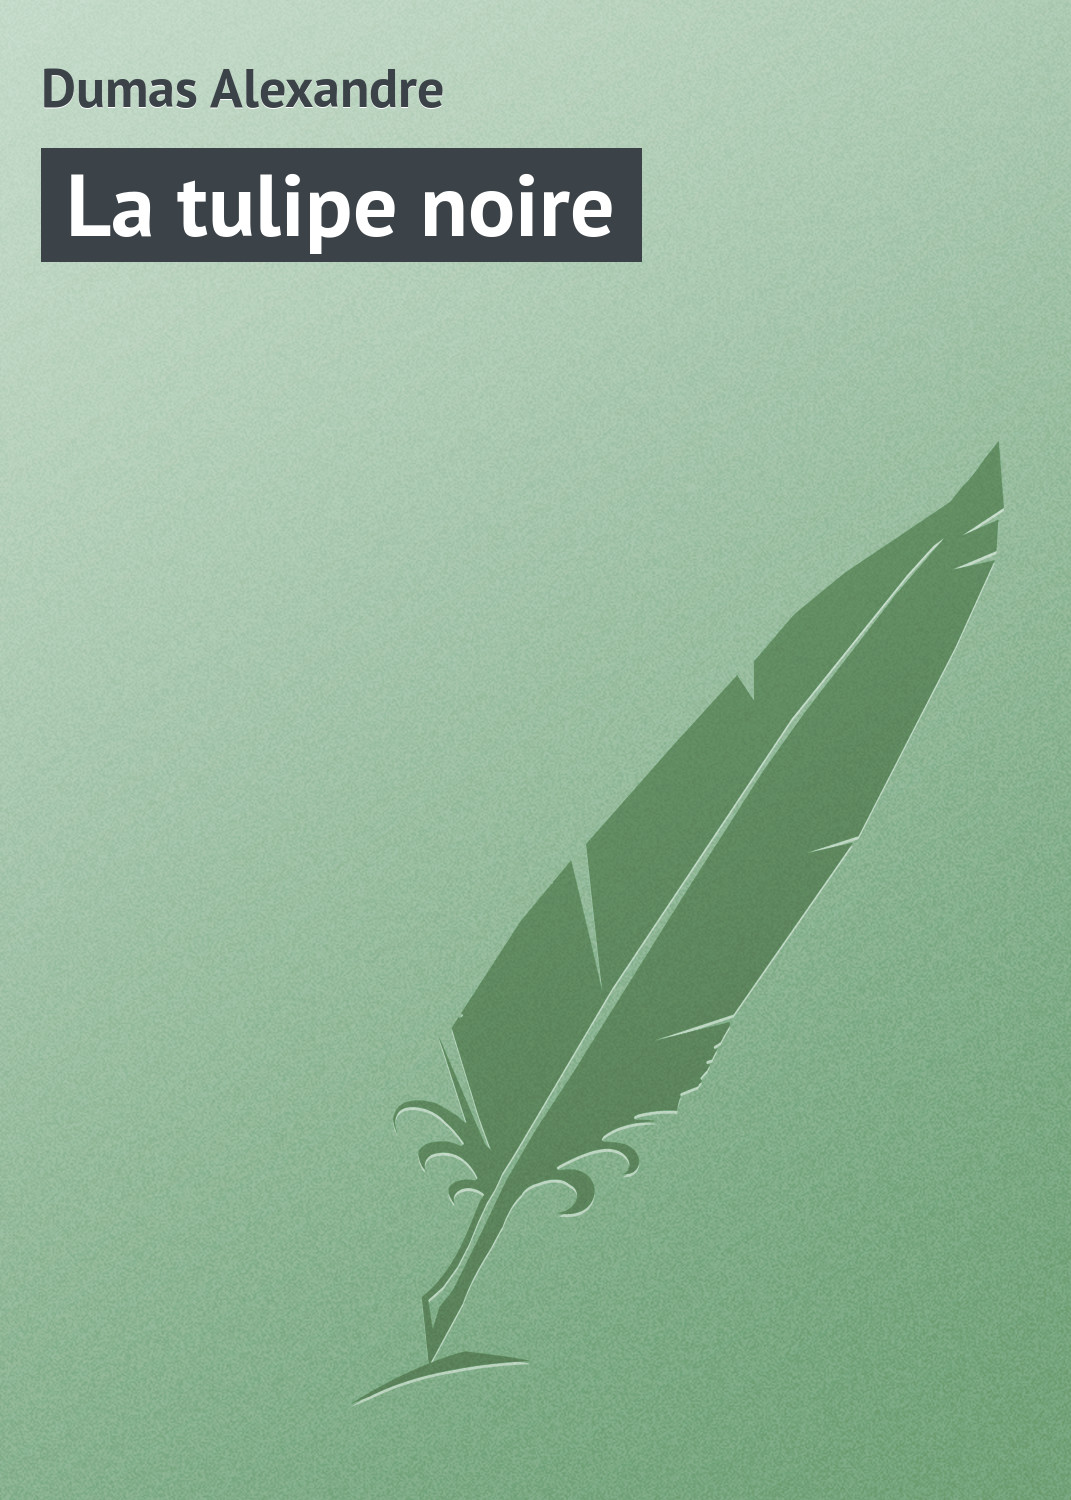 Книга La tulipe noire из серии , созданная Alexandre Dumas, может относится к жанру Зарубежная классика, Иностранные языки. Стоимость электронной книги La tulipe noire с идентификатором 23157923 составляет 5.99 руб.